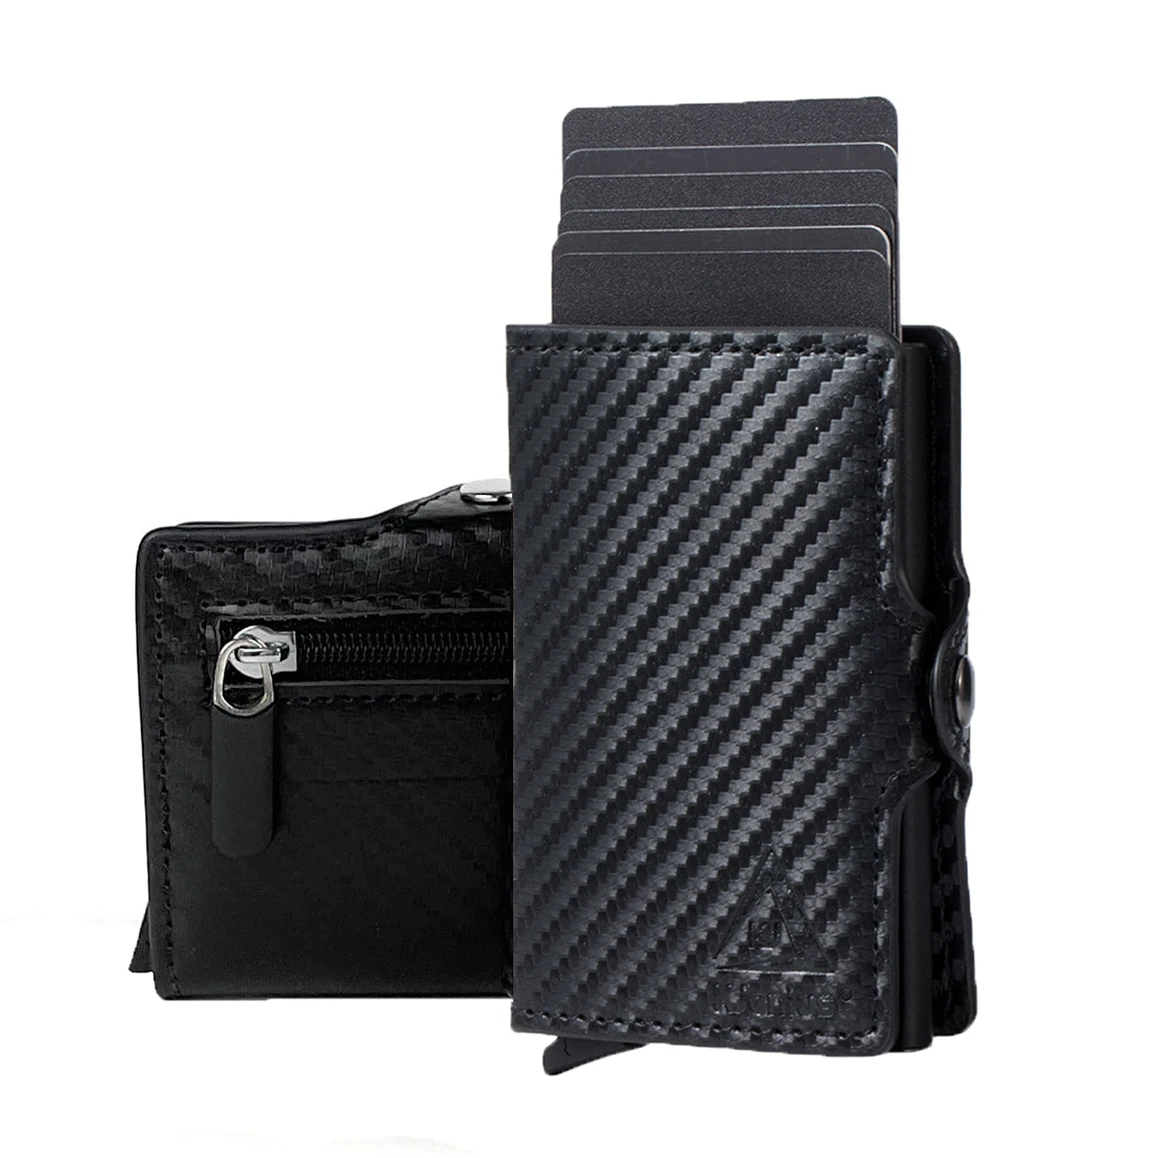 Tanie Luksusowy portfel męski RFID Slim kompaktowy uchwyt na karty kredytowe Moneyhold mały